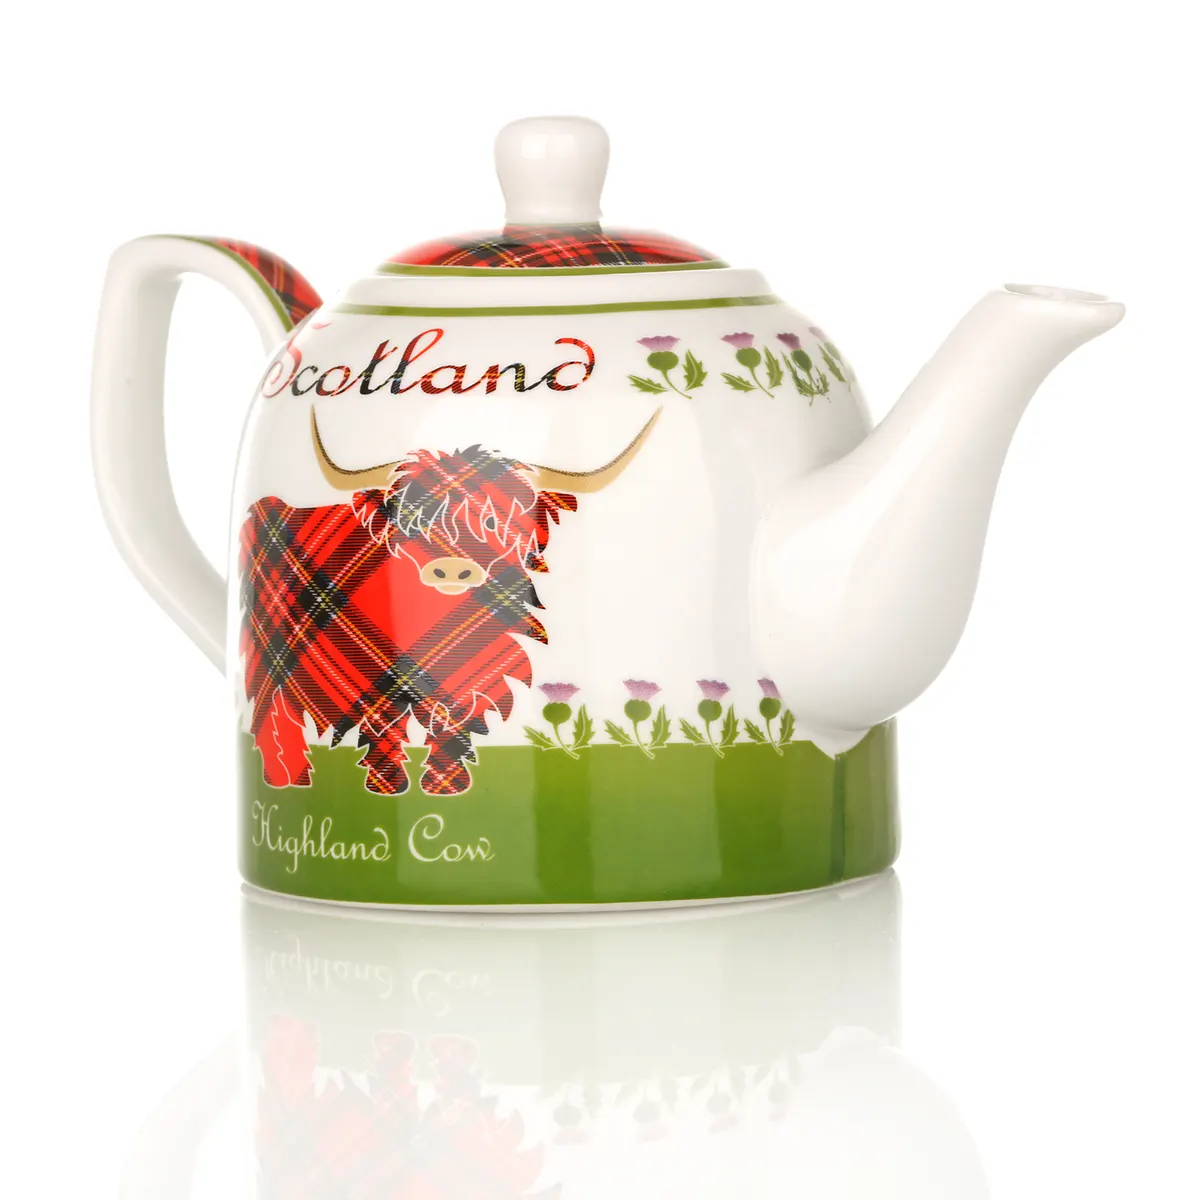 Highland Cow Teekanne aus Keramik mit schottischem Rind & Tartan-Muster